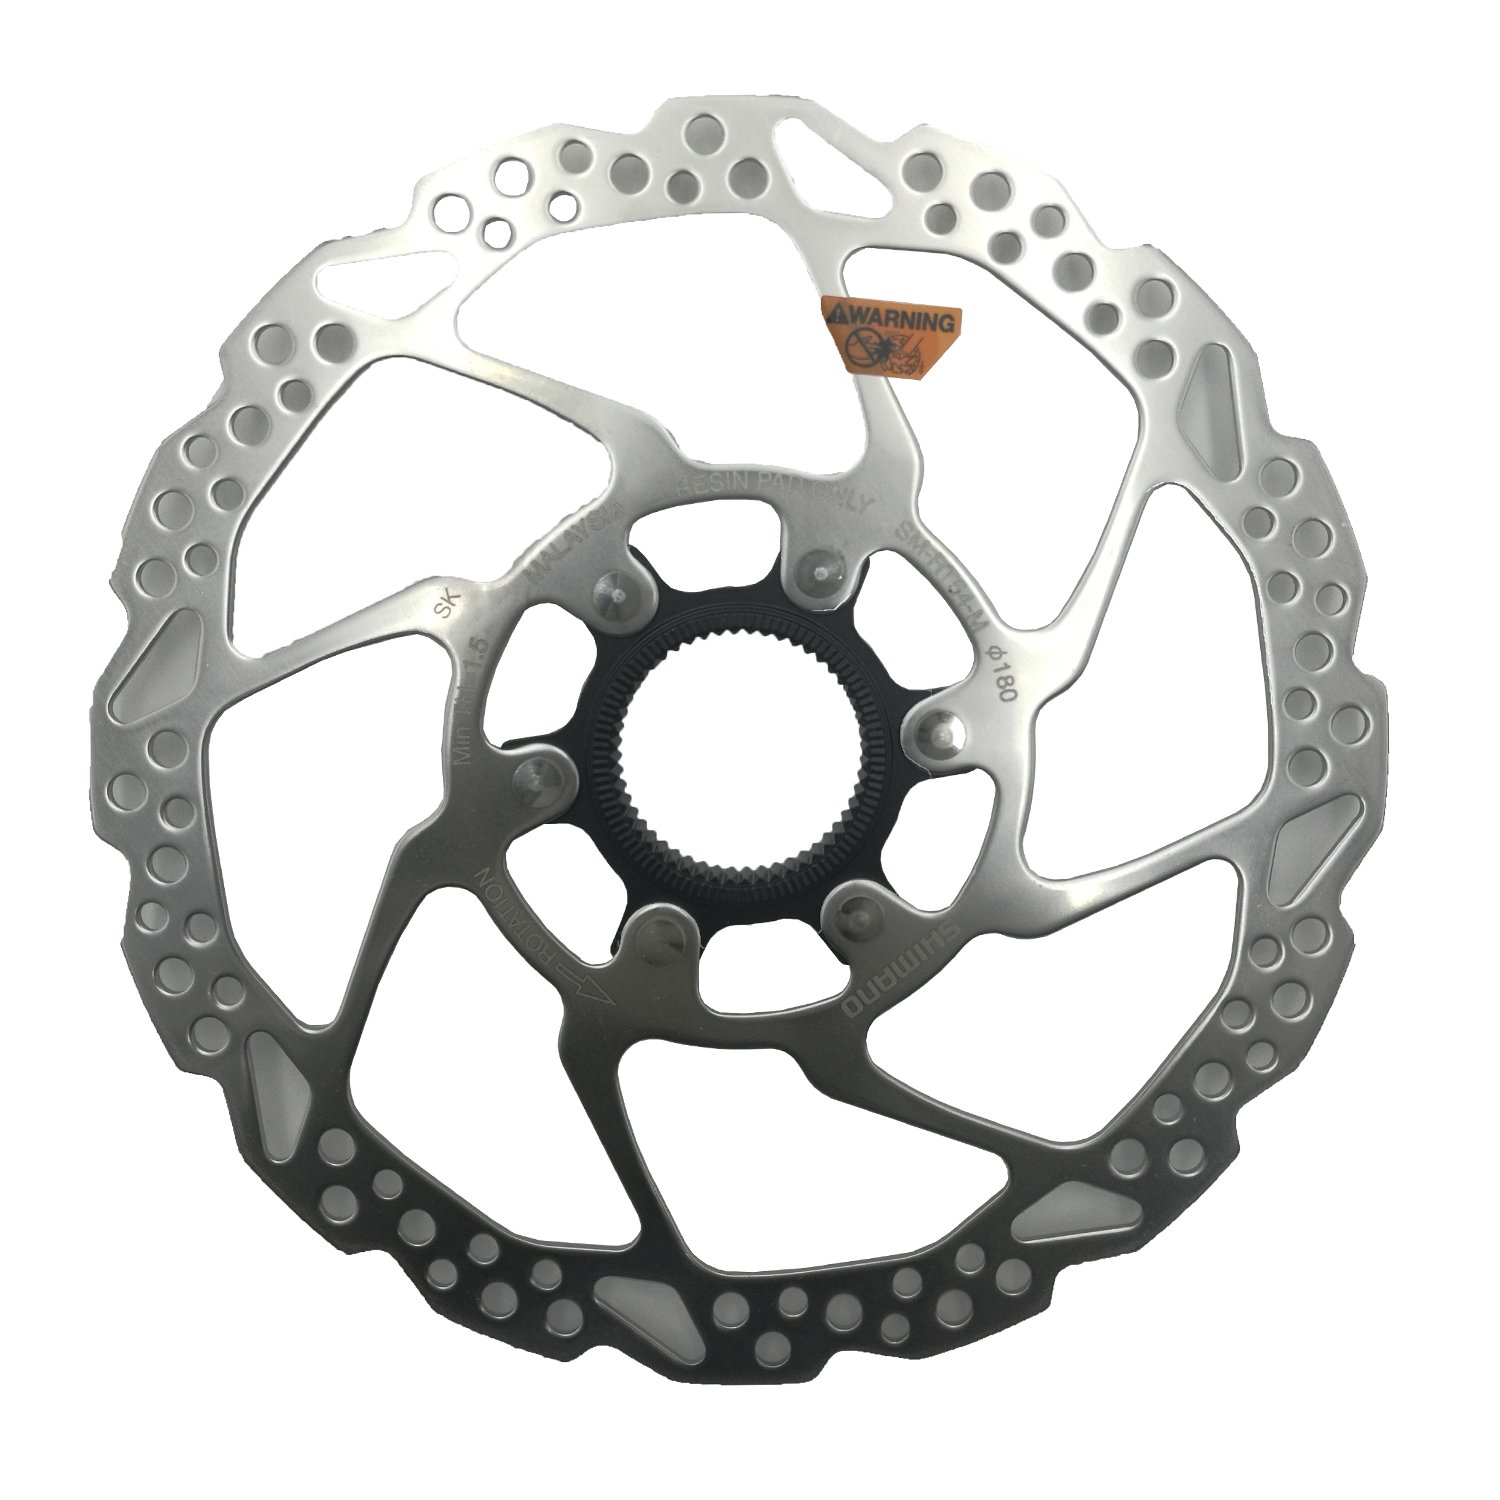 Ротор велосипедный Shimano RT54, 180мм, C.Lock, только для пласт колод ESMRT54M ротор велосипедный shimano em810 203мм c lock irtem810le